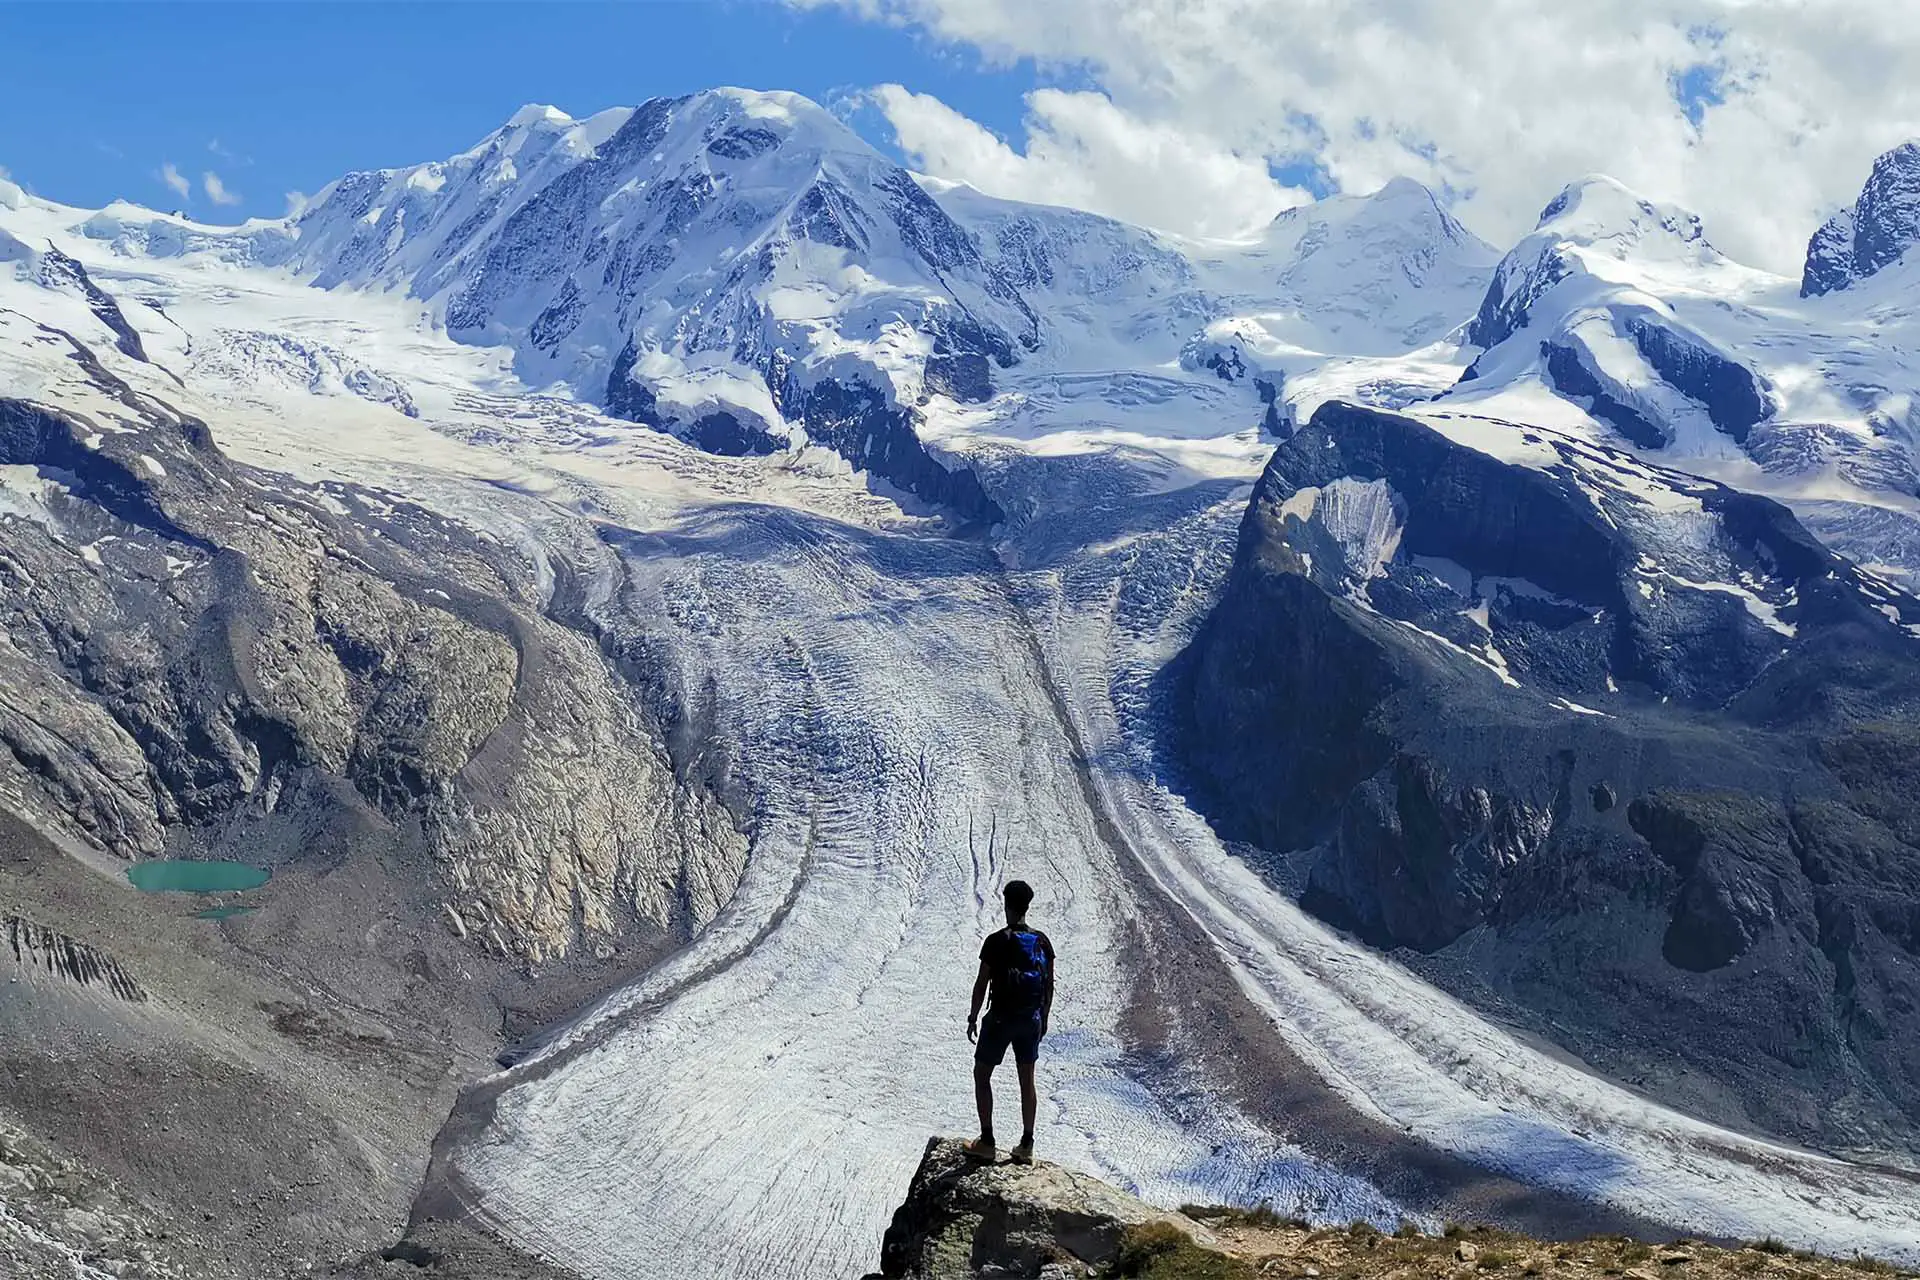 Stunning glacier views above Zermatt.